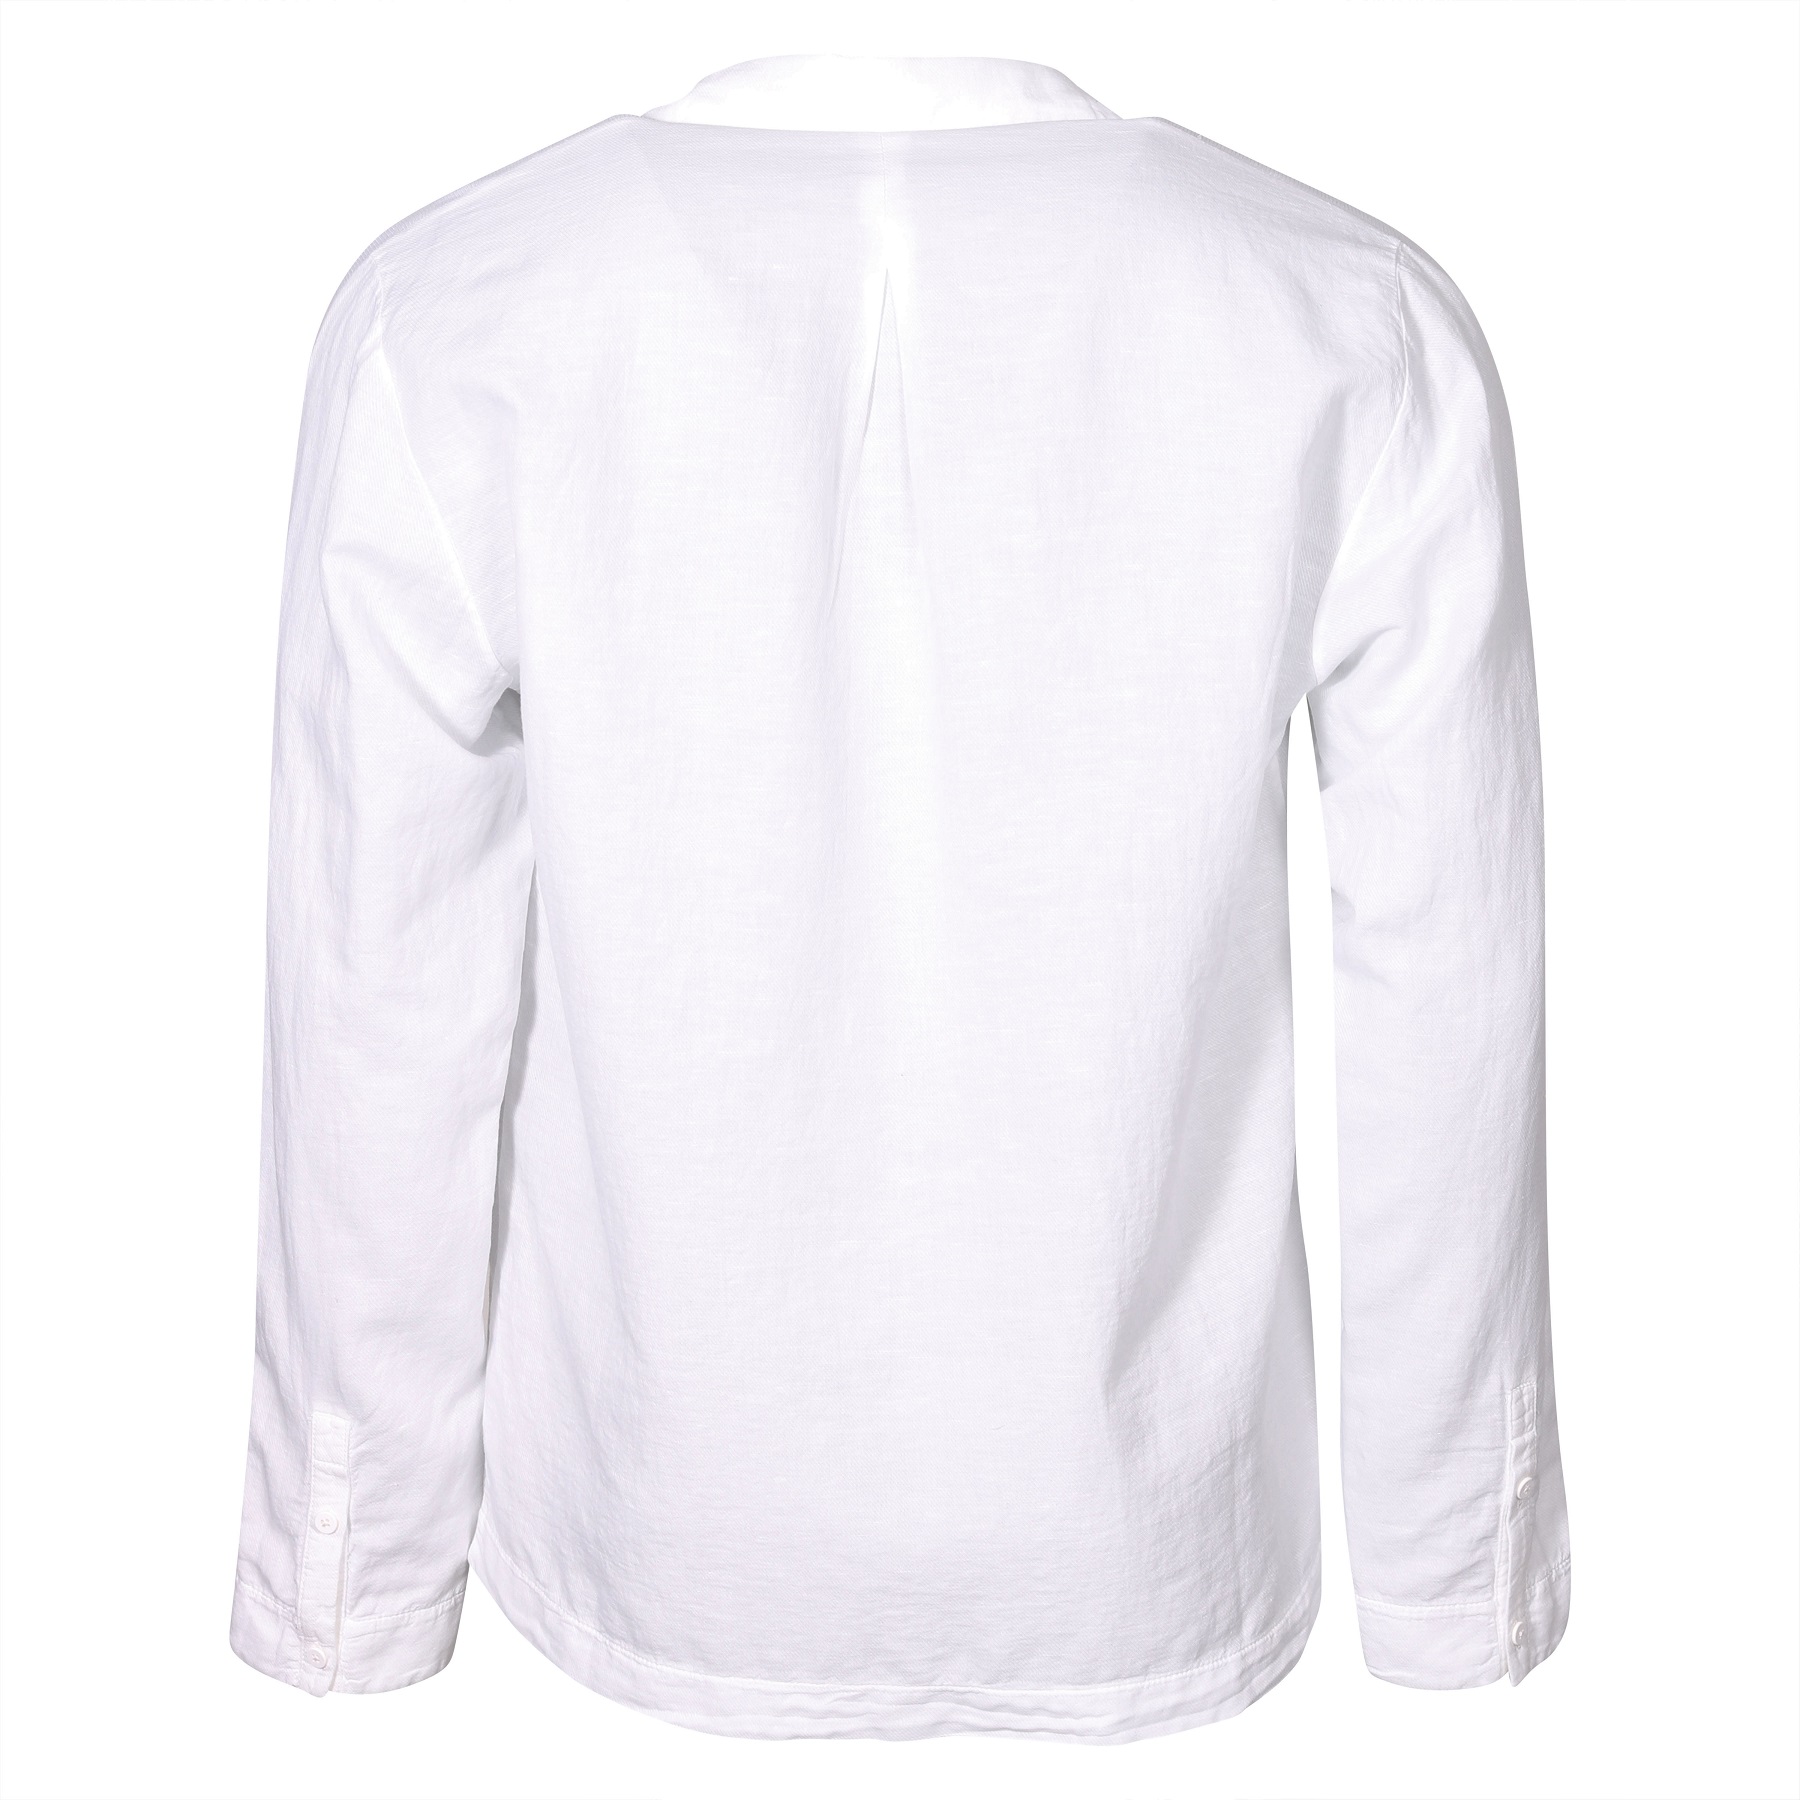 TRANSIT UOMO Cotton Linen Shirt in White 3XL